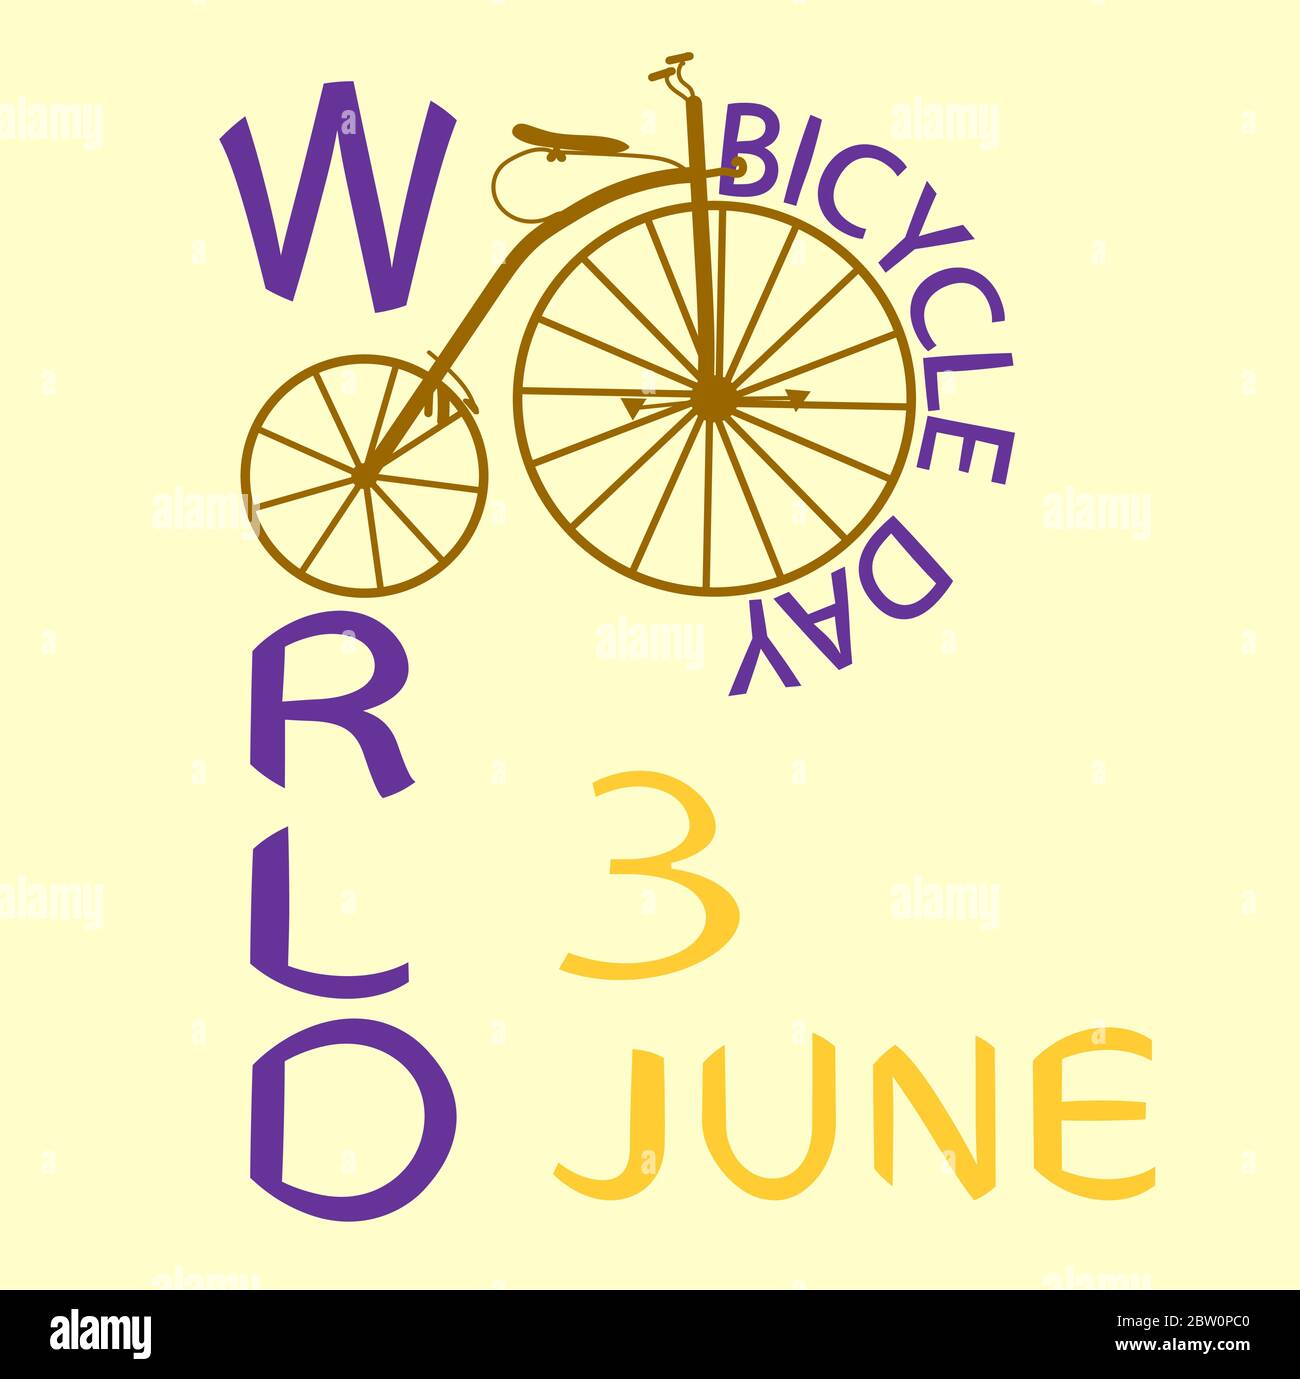 Scritta di colore viola Giornata Mondiale della bicicletta e vecchia bicicletta marrone e iscrizione gialla del 3 giugno su sfondo chiaro Illustrazione Vettoriale